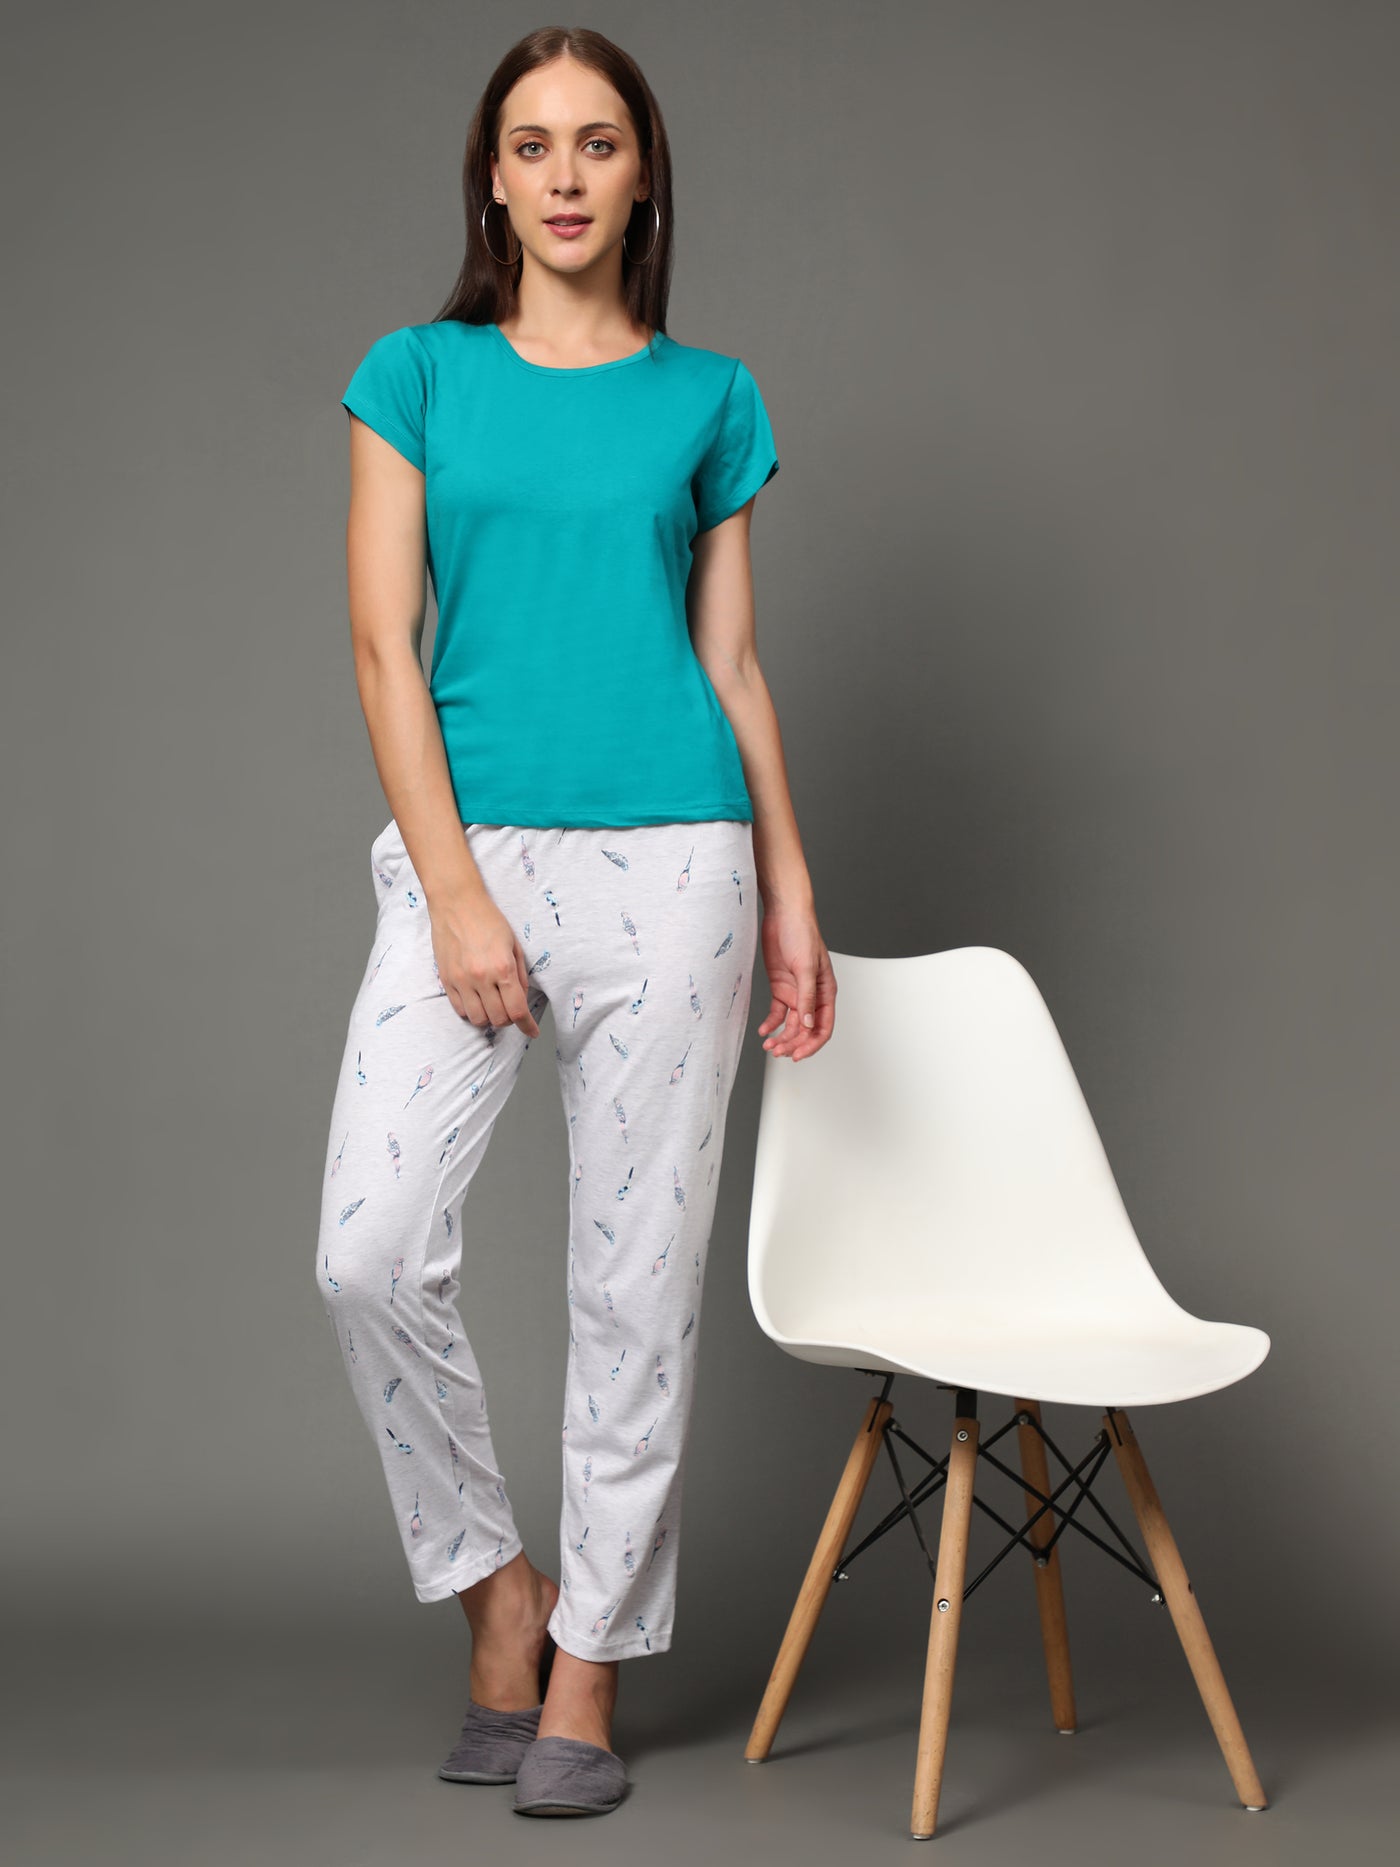 Pyjama Set for Women-Green T-Shirt & Bird Print Pant